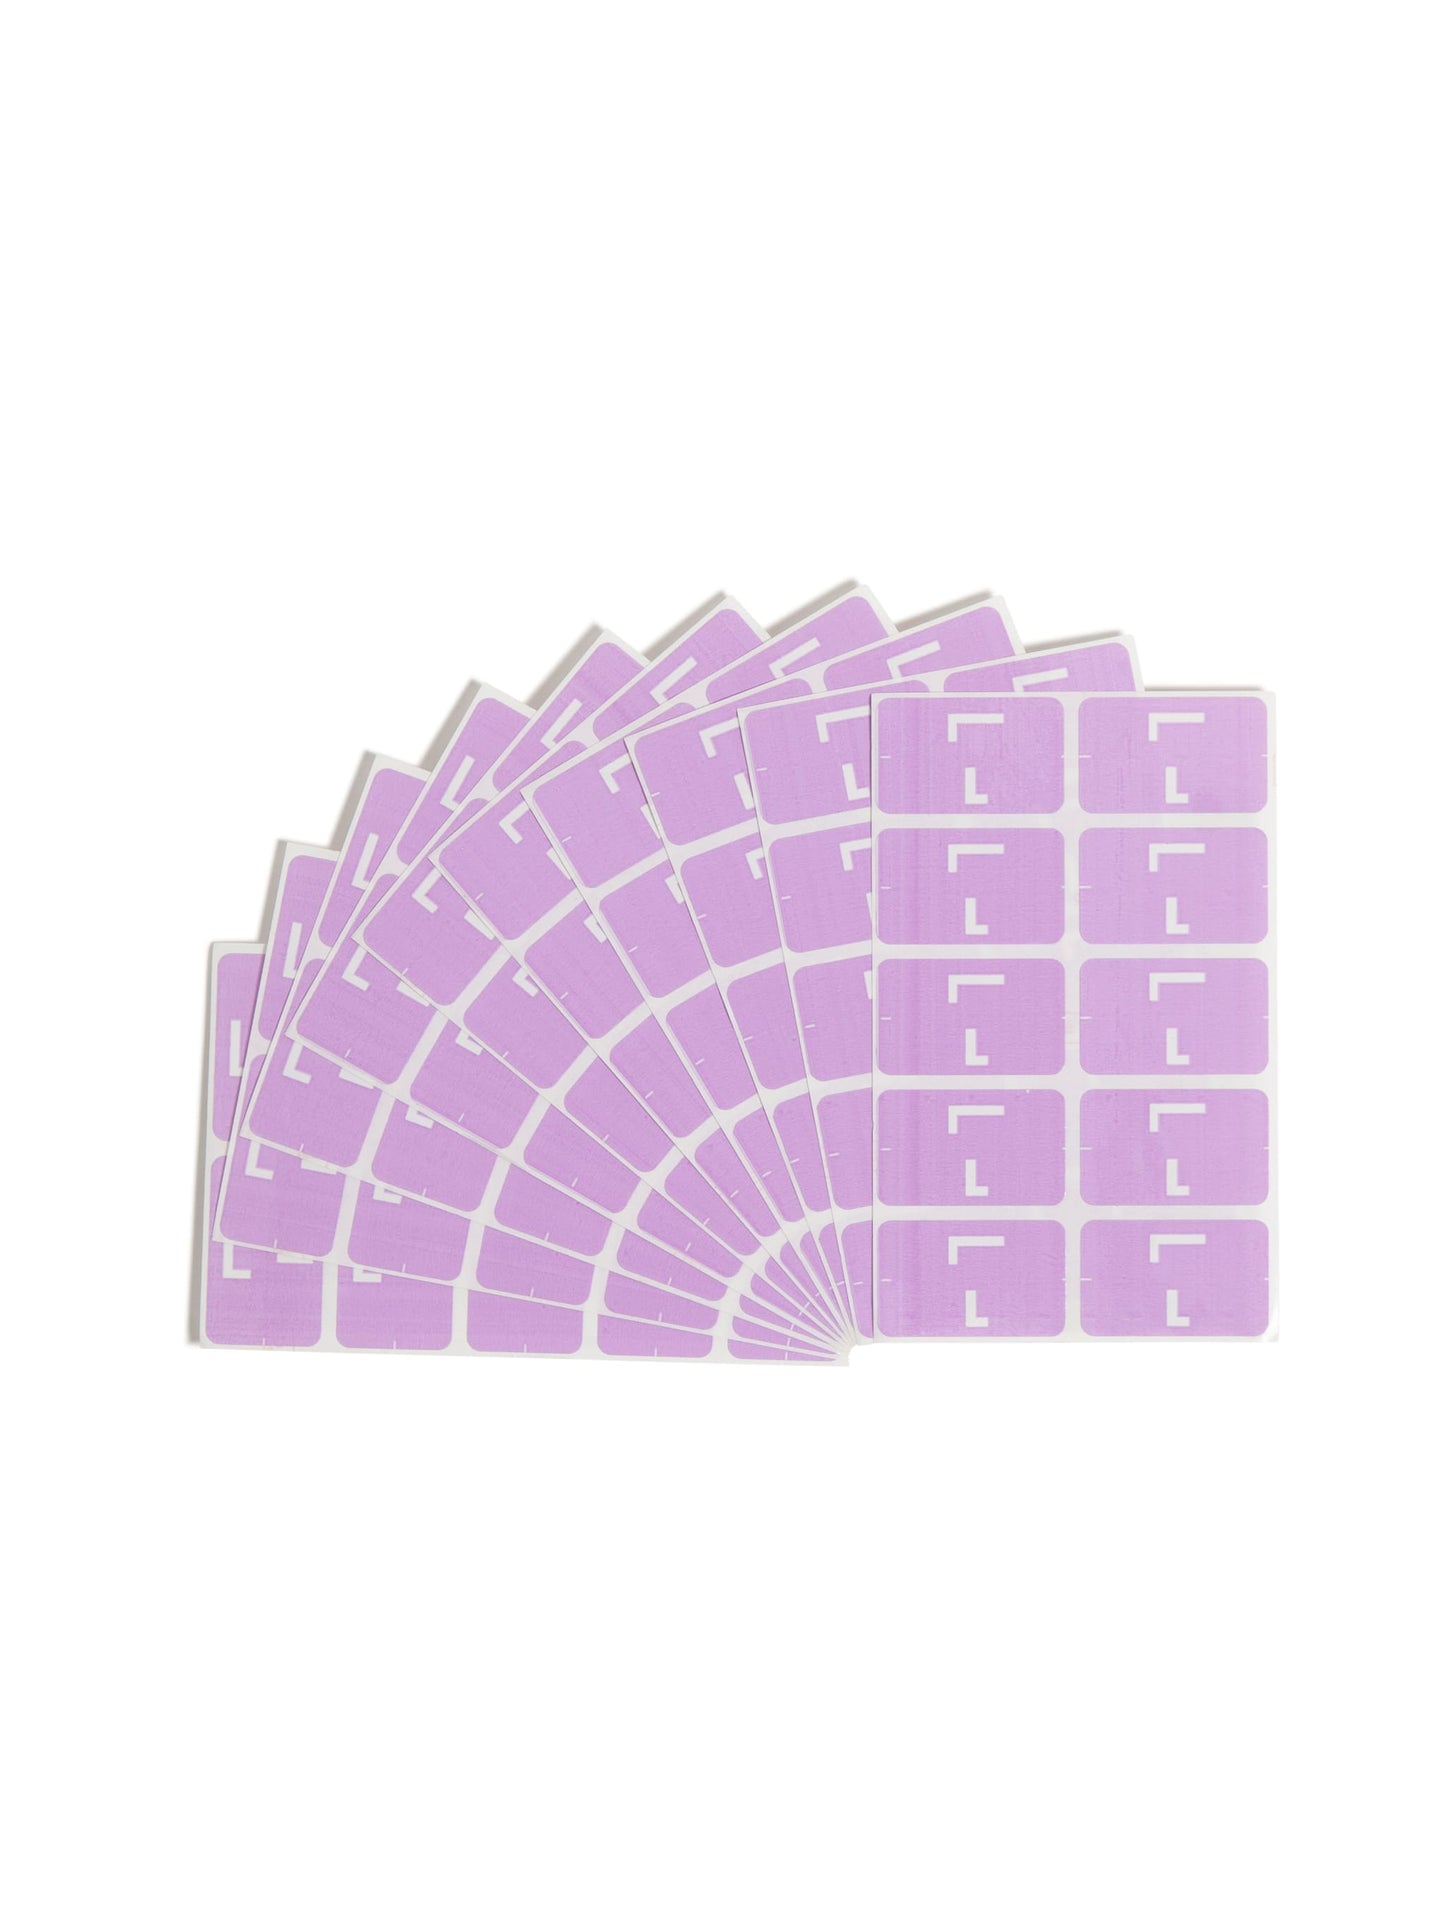 AlphaZ® ACCS Color Coded Alphabetic Labels - Sheets, Lavender Color, 1" X 1-5/8" Size, Set of 1, 086486671828